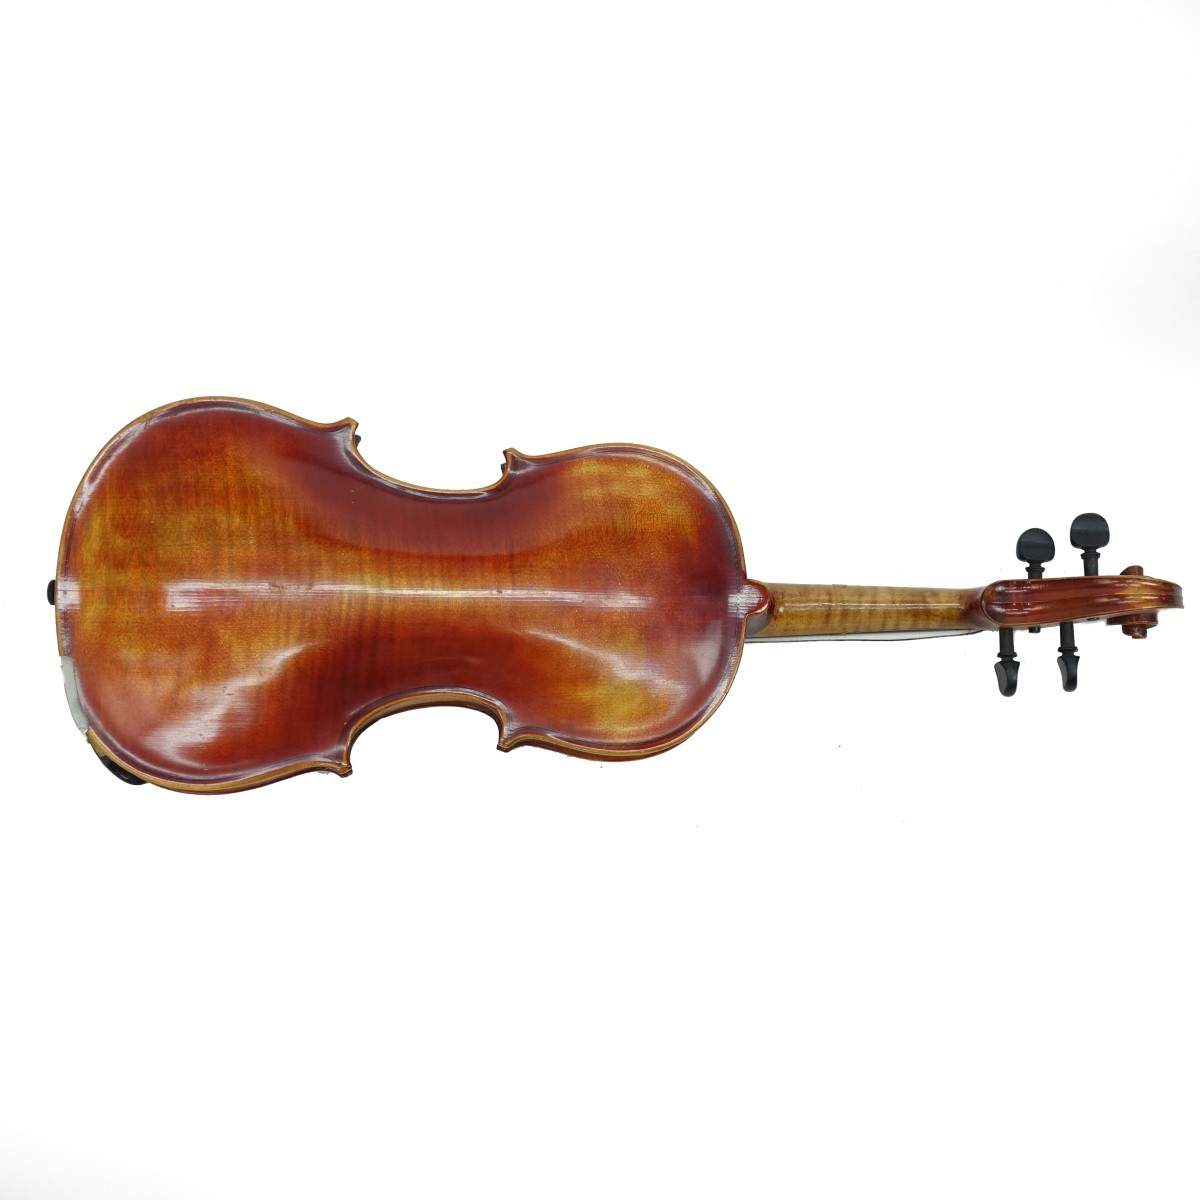 Copy of Antonius Stradivarius Violin